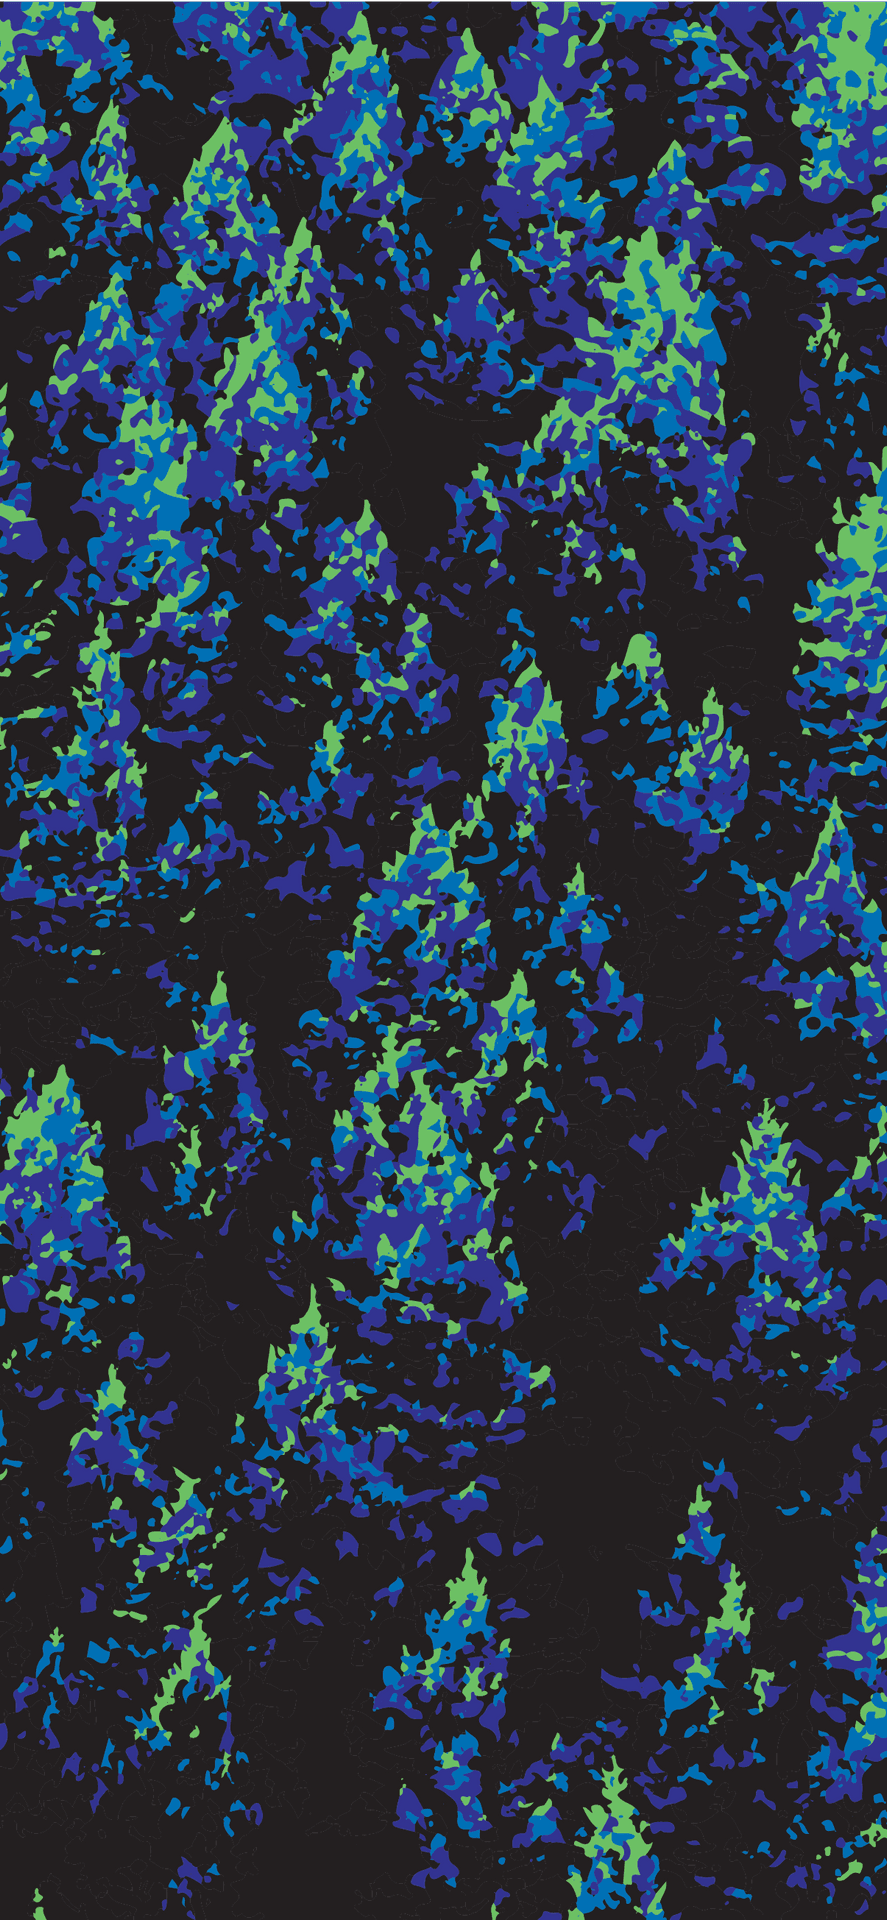 Einpixelisiertes Bild Eines Waldes